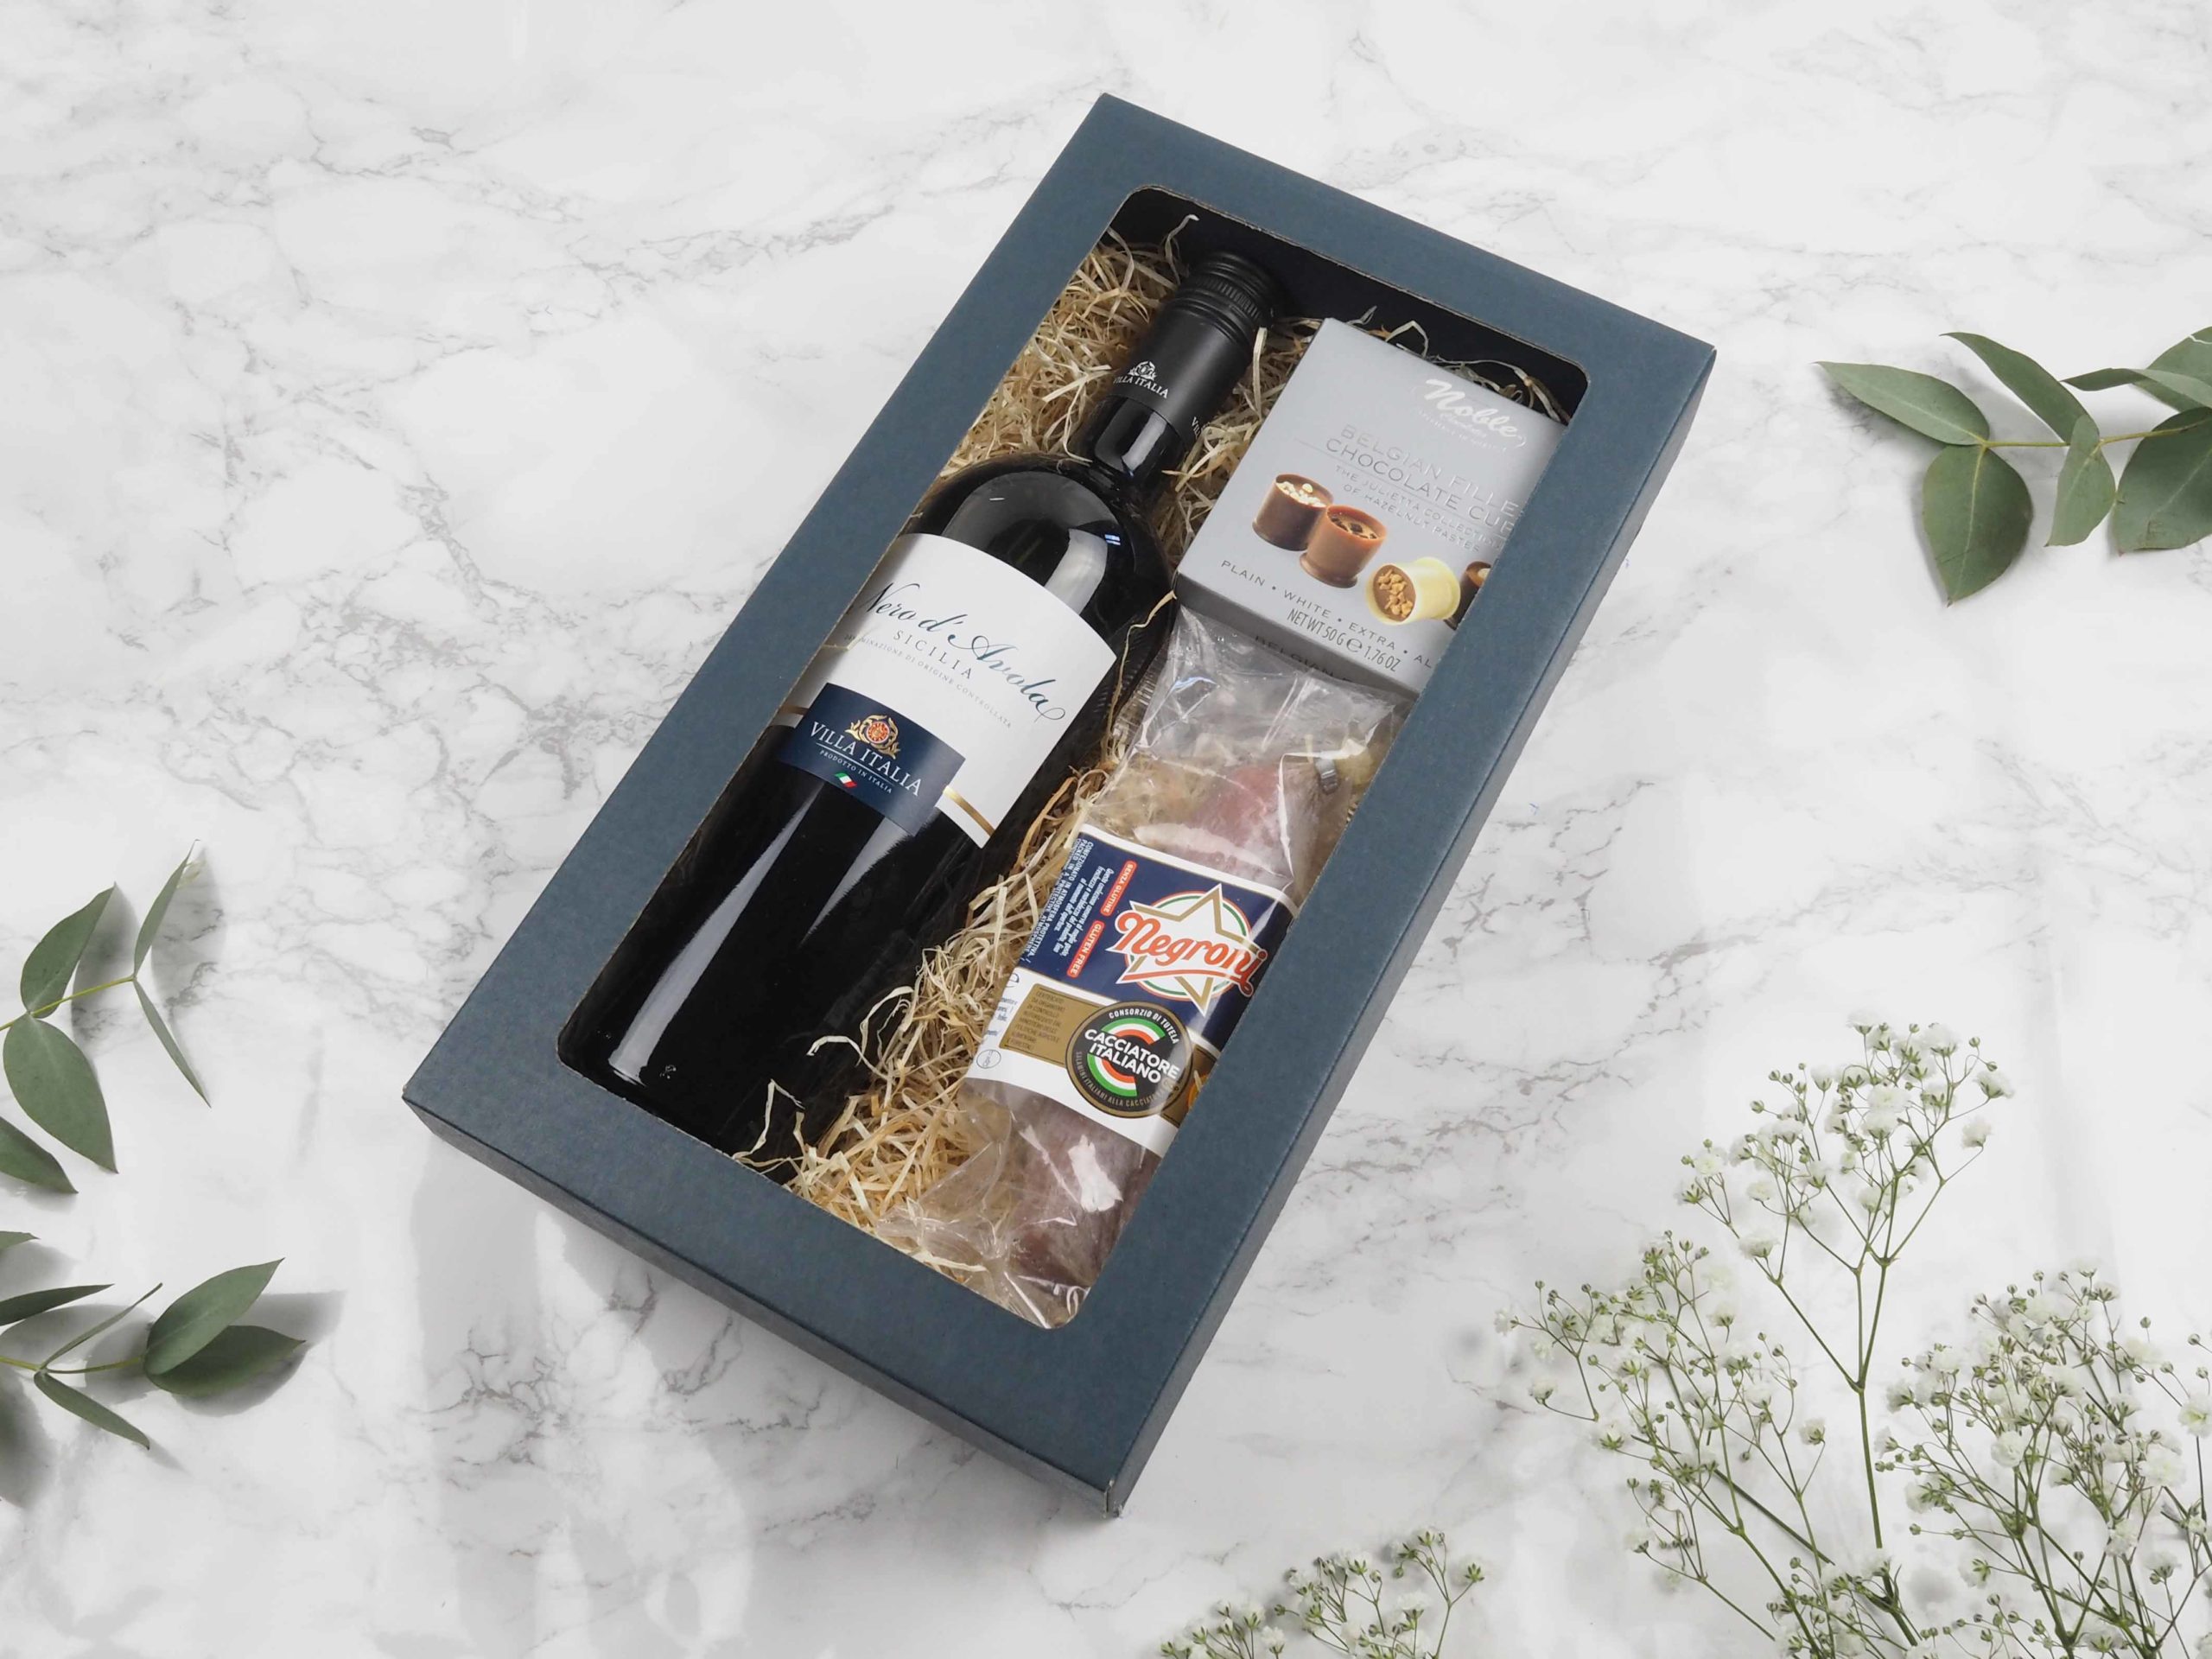 Dárková krabička v sobě ukrývá italské červené víno, belgické plněné pralinky a italský salámek. Všechny pochutiny jsou baleny v elegantní a ekologické papírové krabičce. Obdarujte s chutí malým degustačním zážitkem.